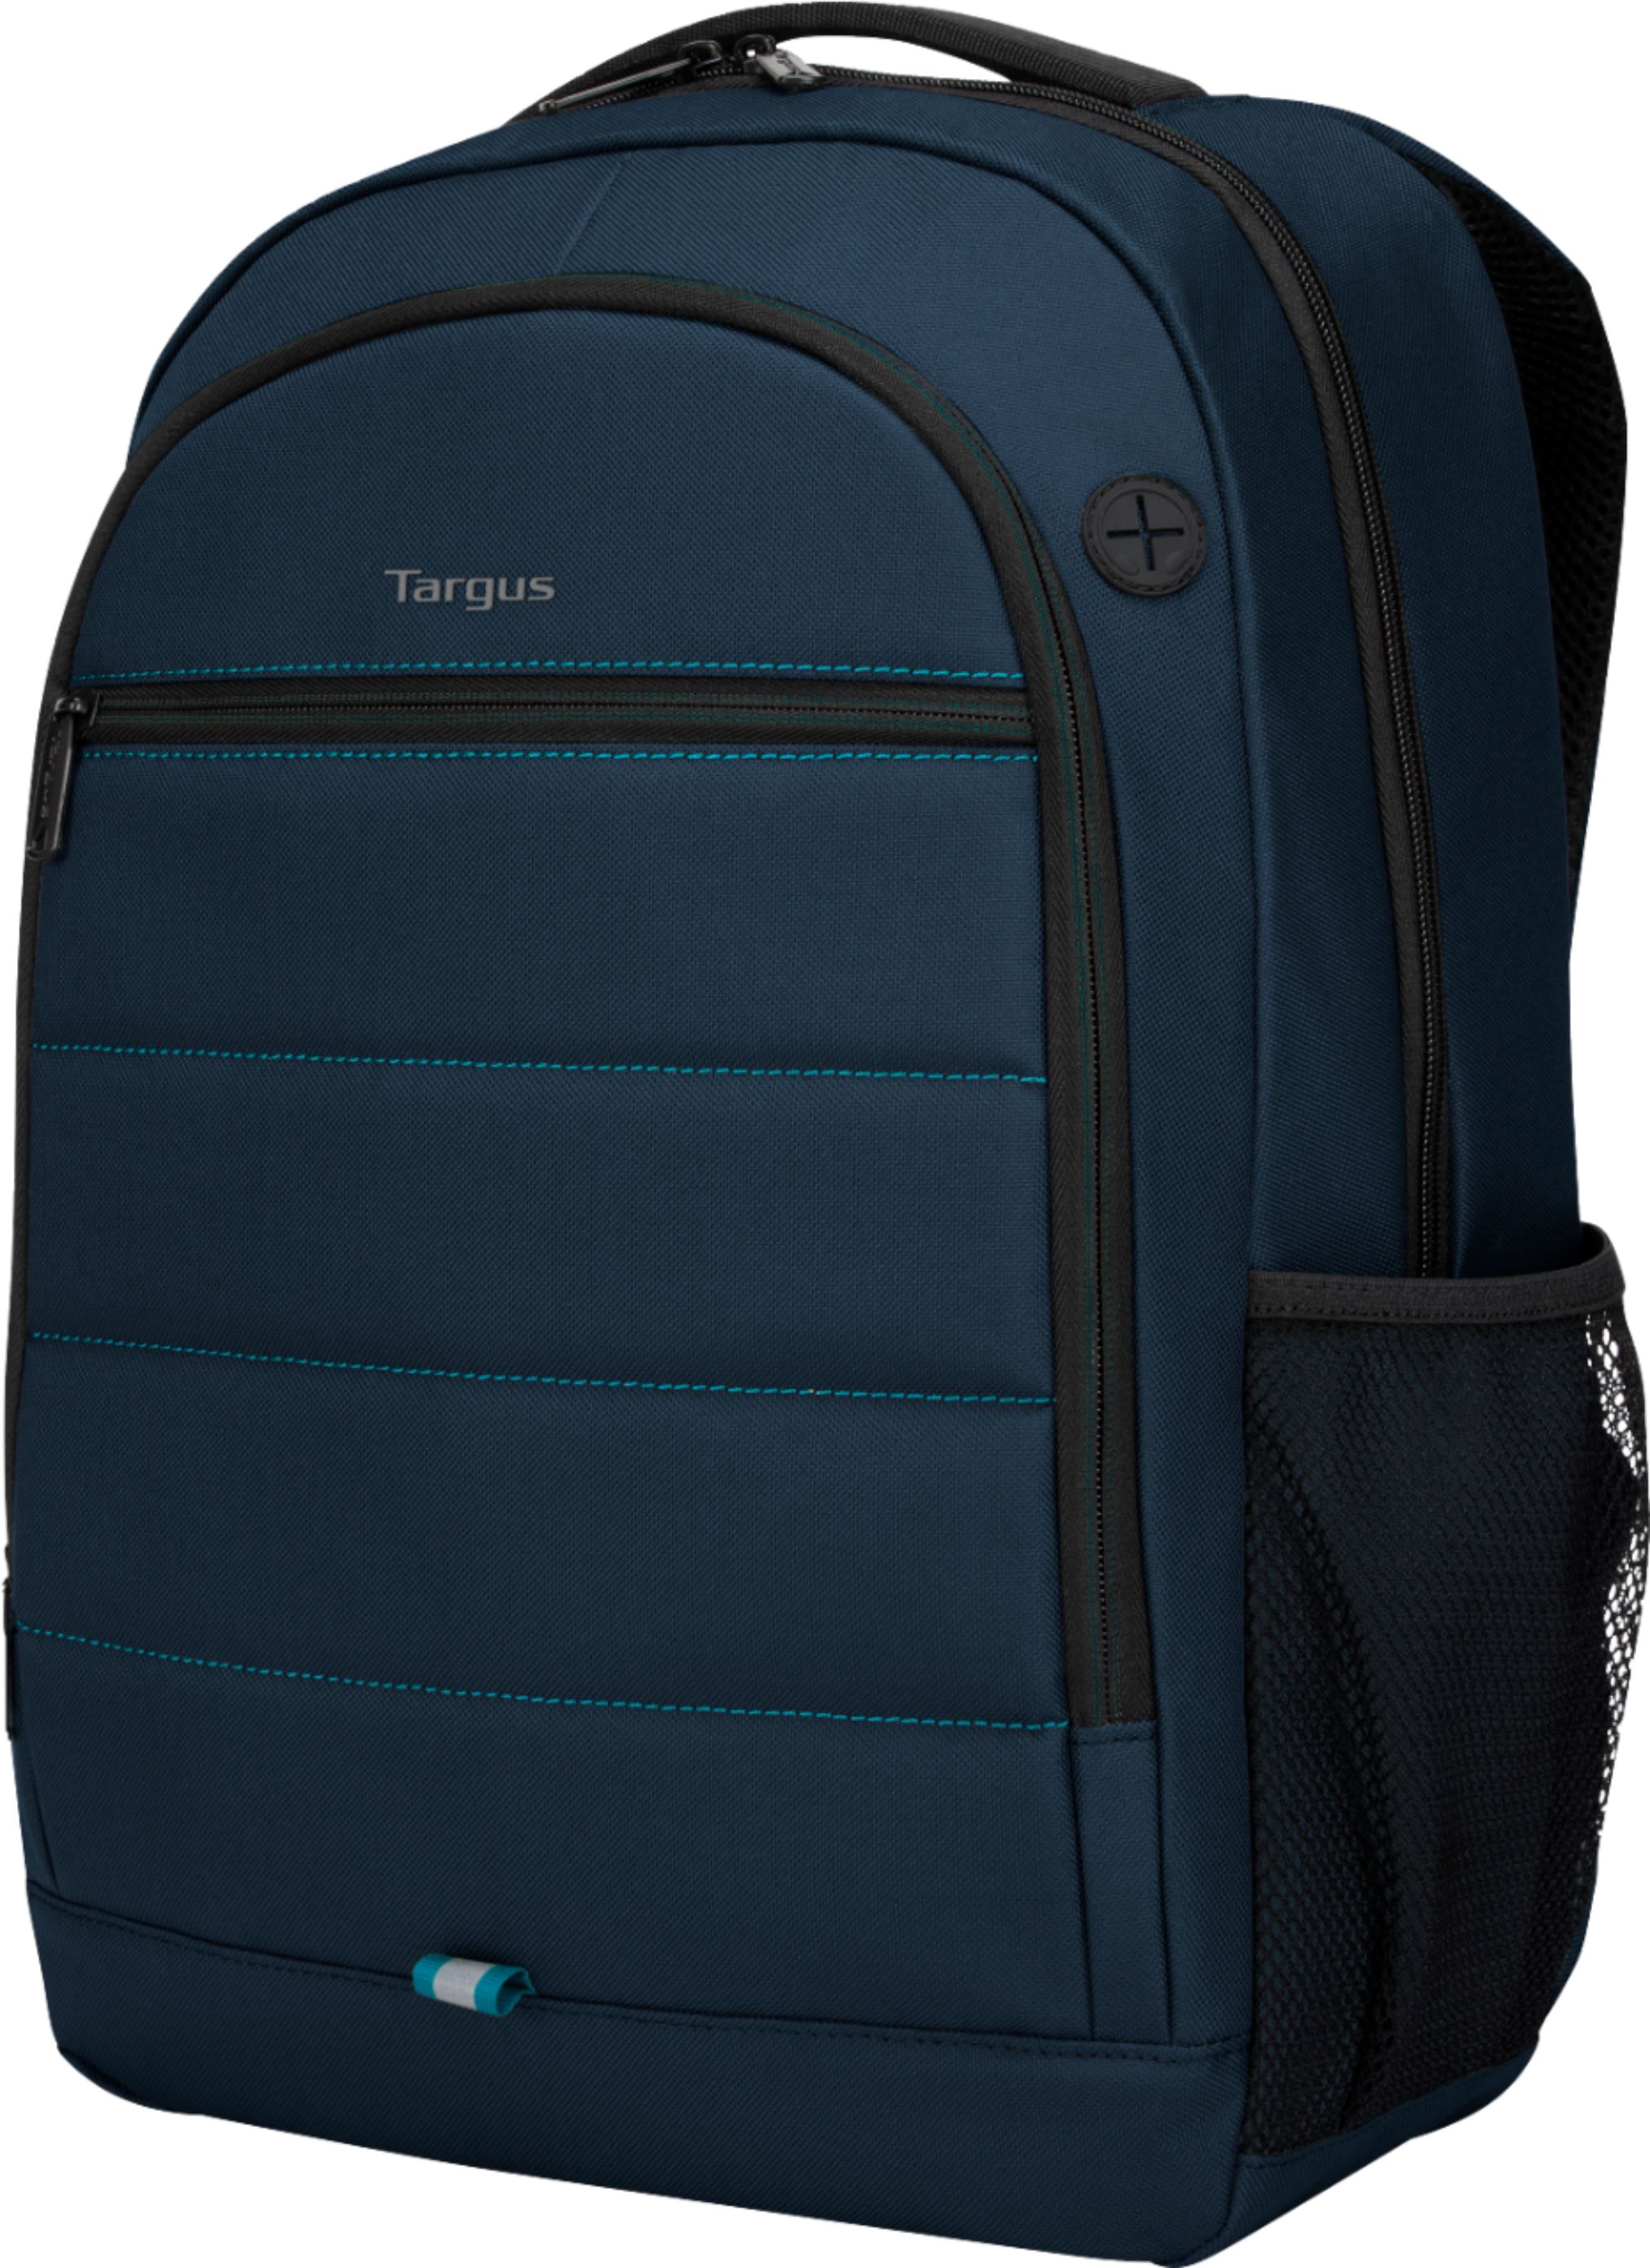 Left View: Targus - Octave Backpack for 15.6” Laptops - Blue